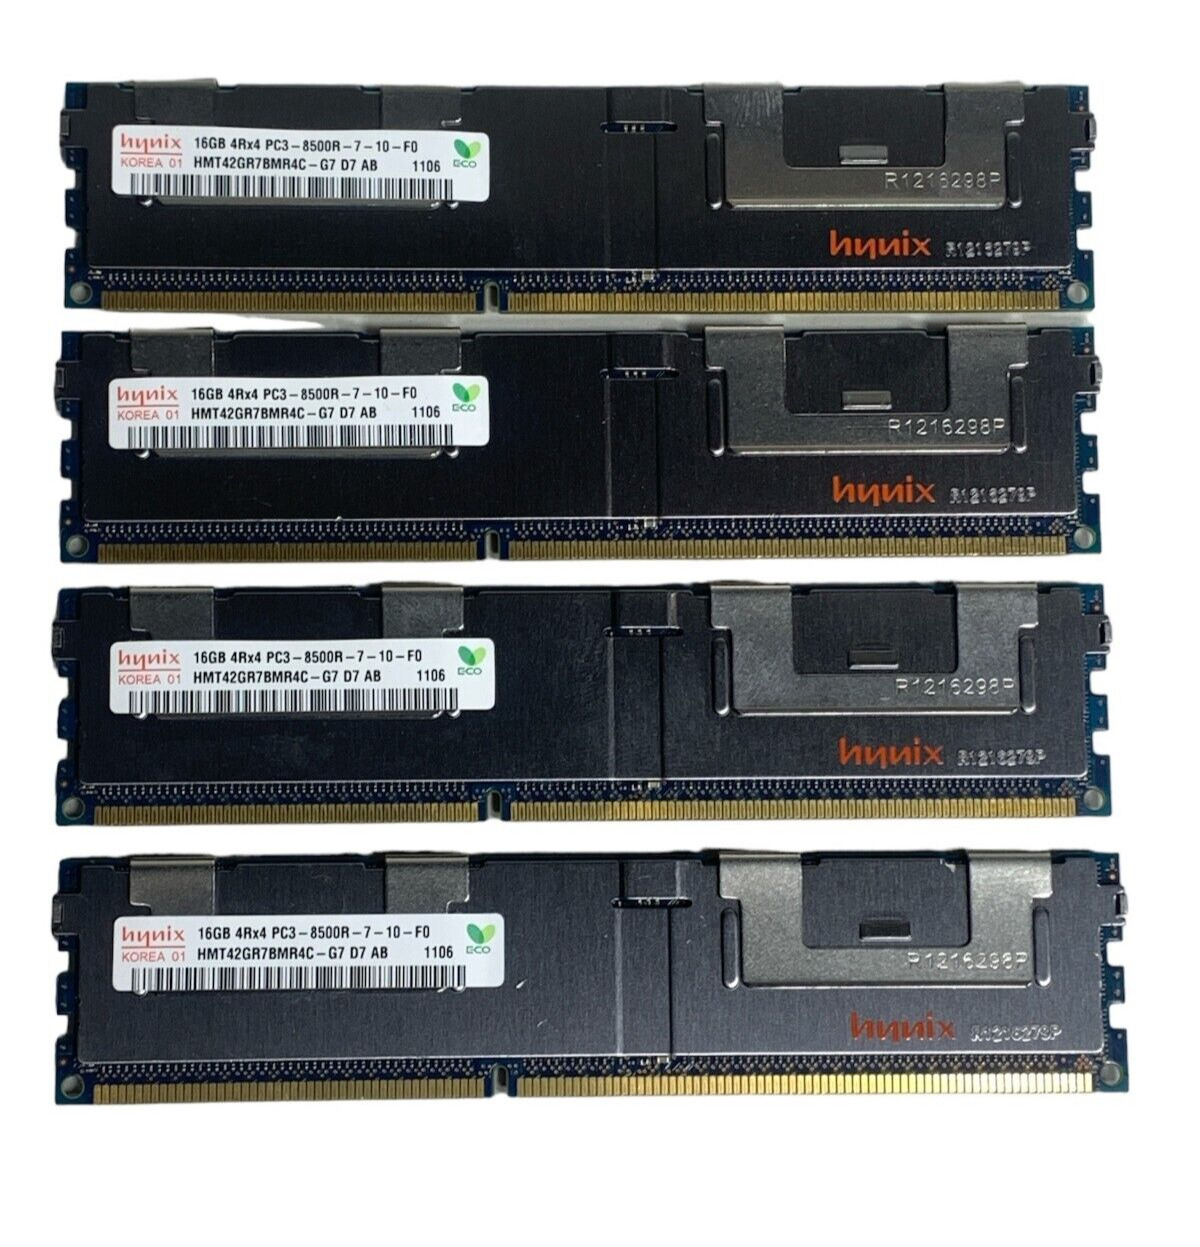 Lot of 4 Hynix 16GB 4Rx4 PC3-8500R DDR3-1066 1.5V ECC Server Memory (64GB)